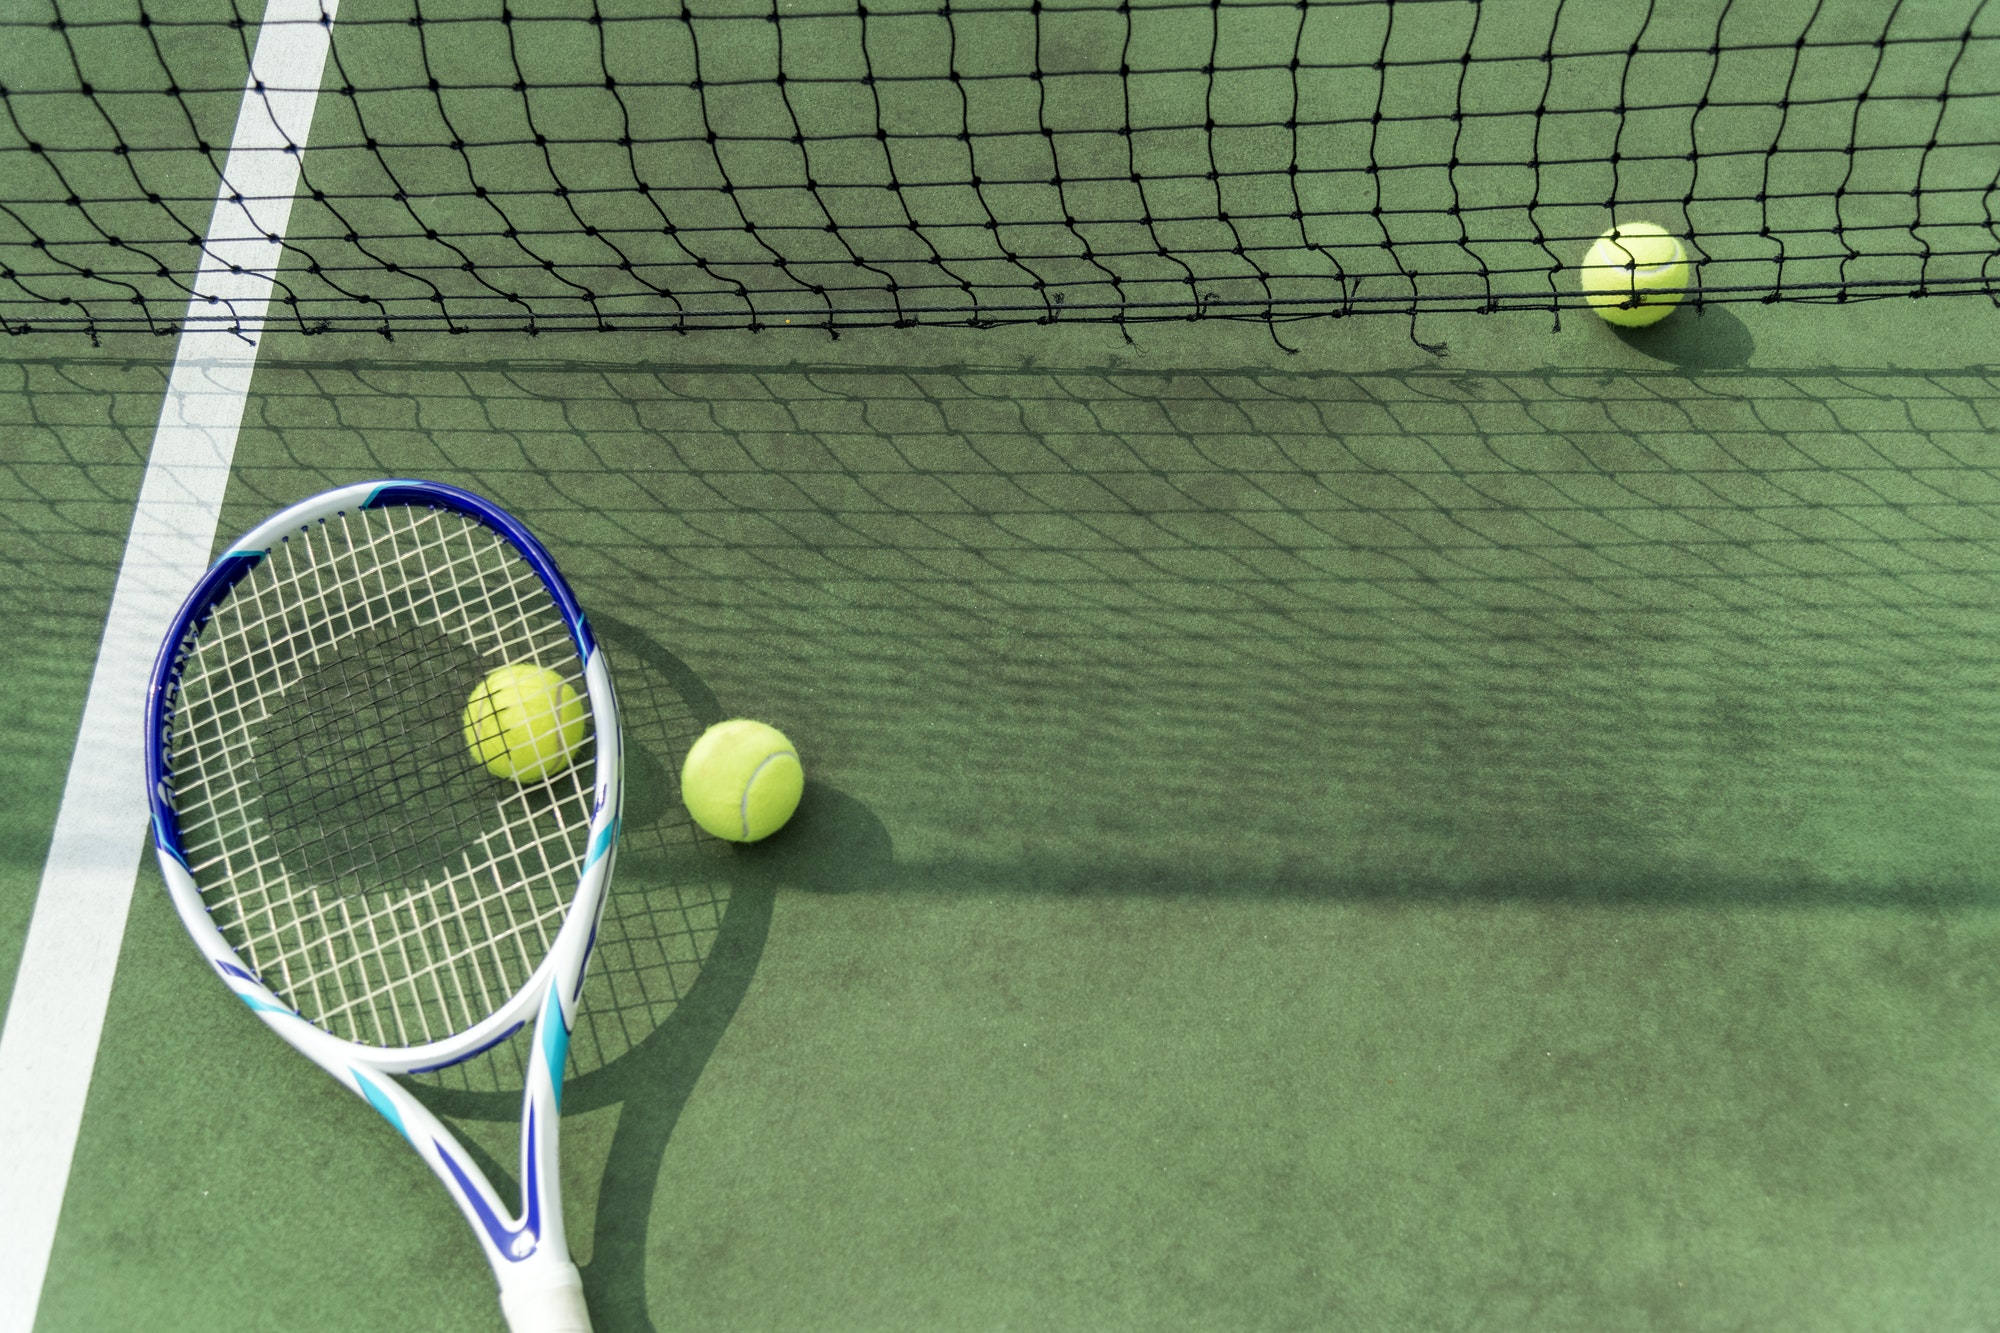 tennis-balls-on-a-tennis-court.jpg